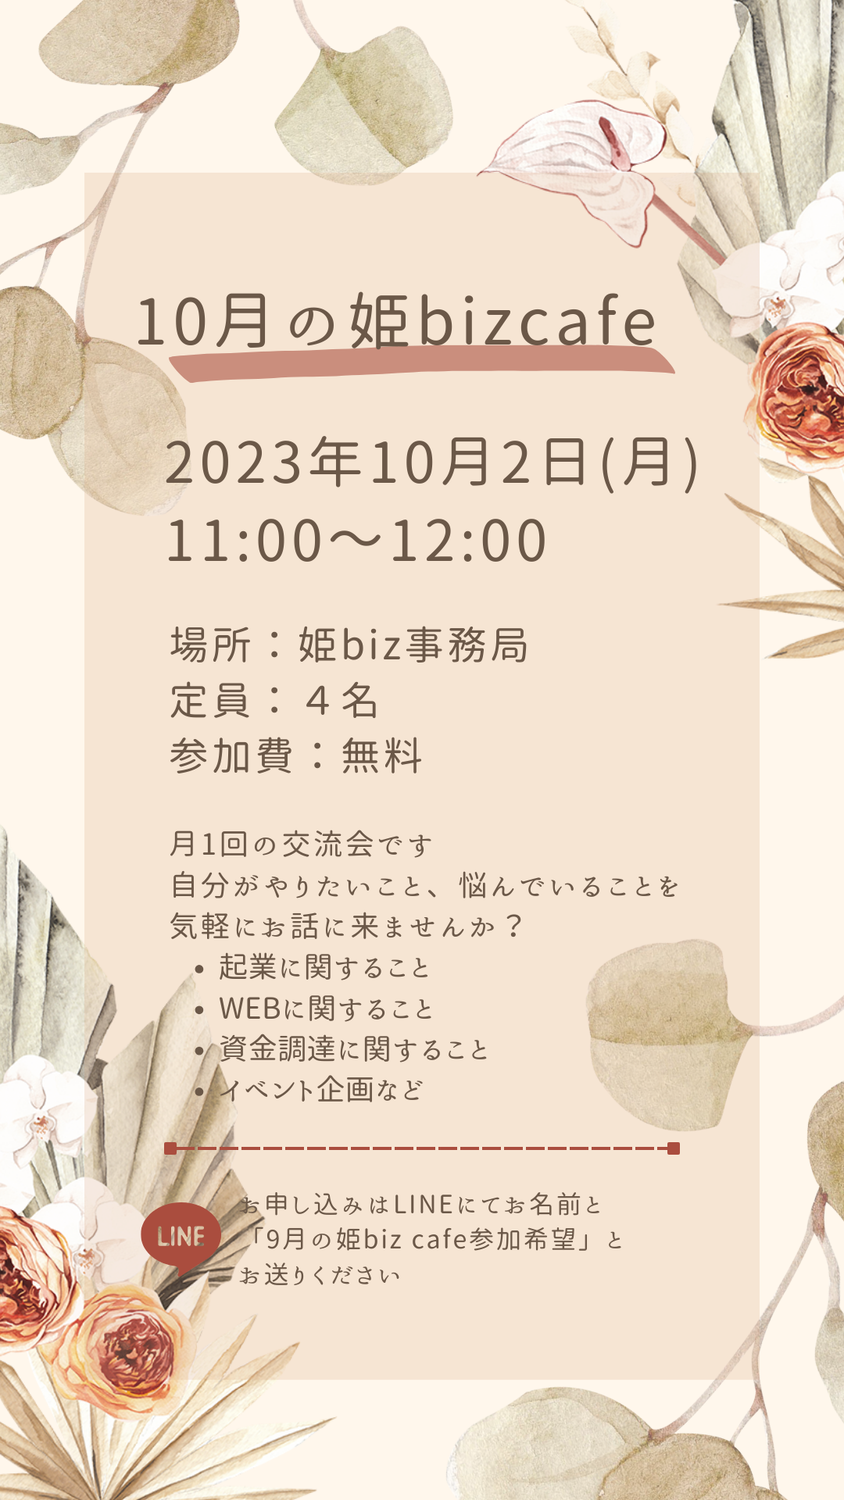 10月の姫bizcafe開催のお知らせ